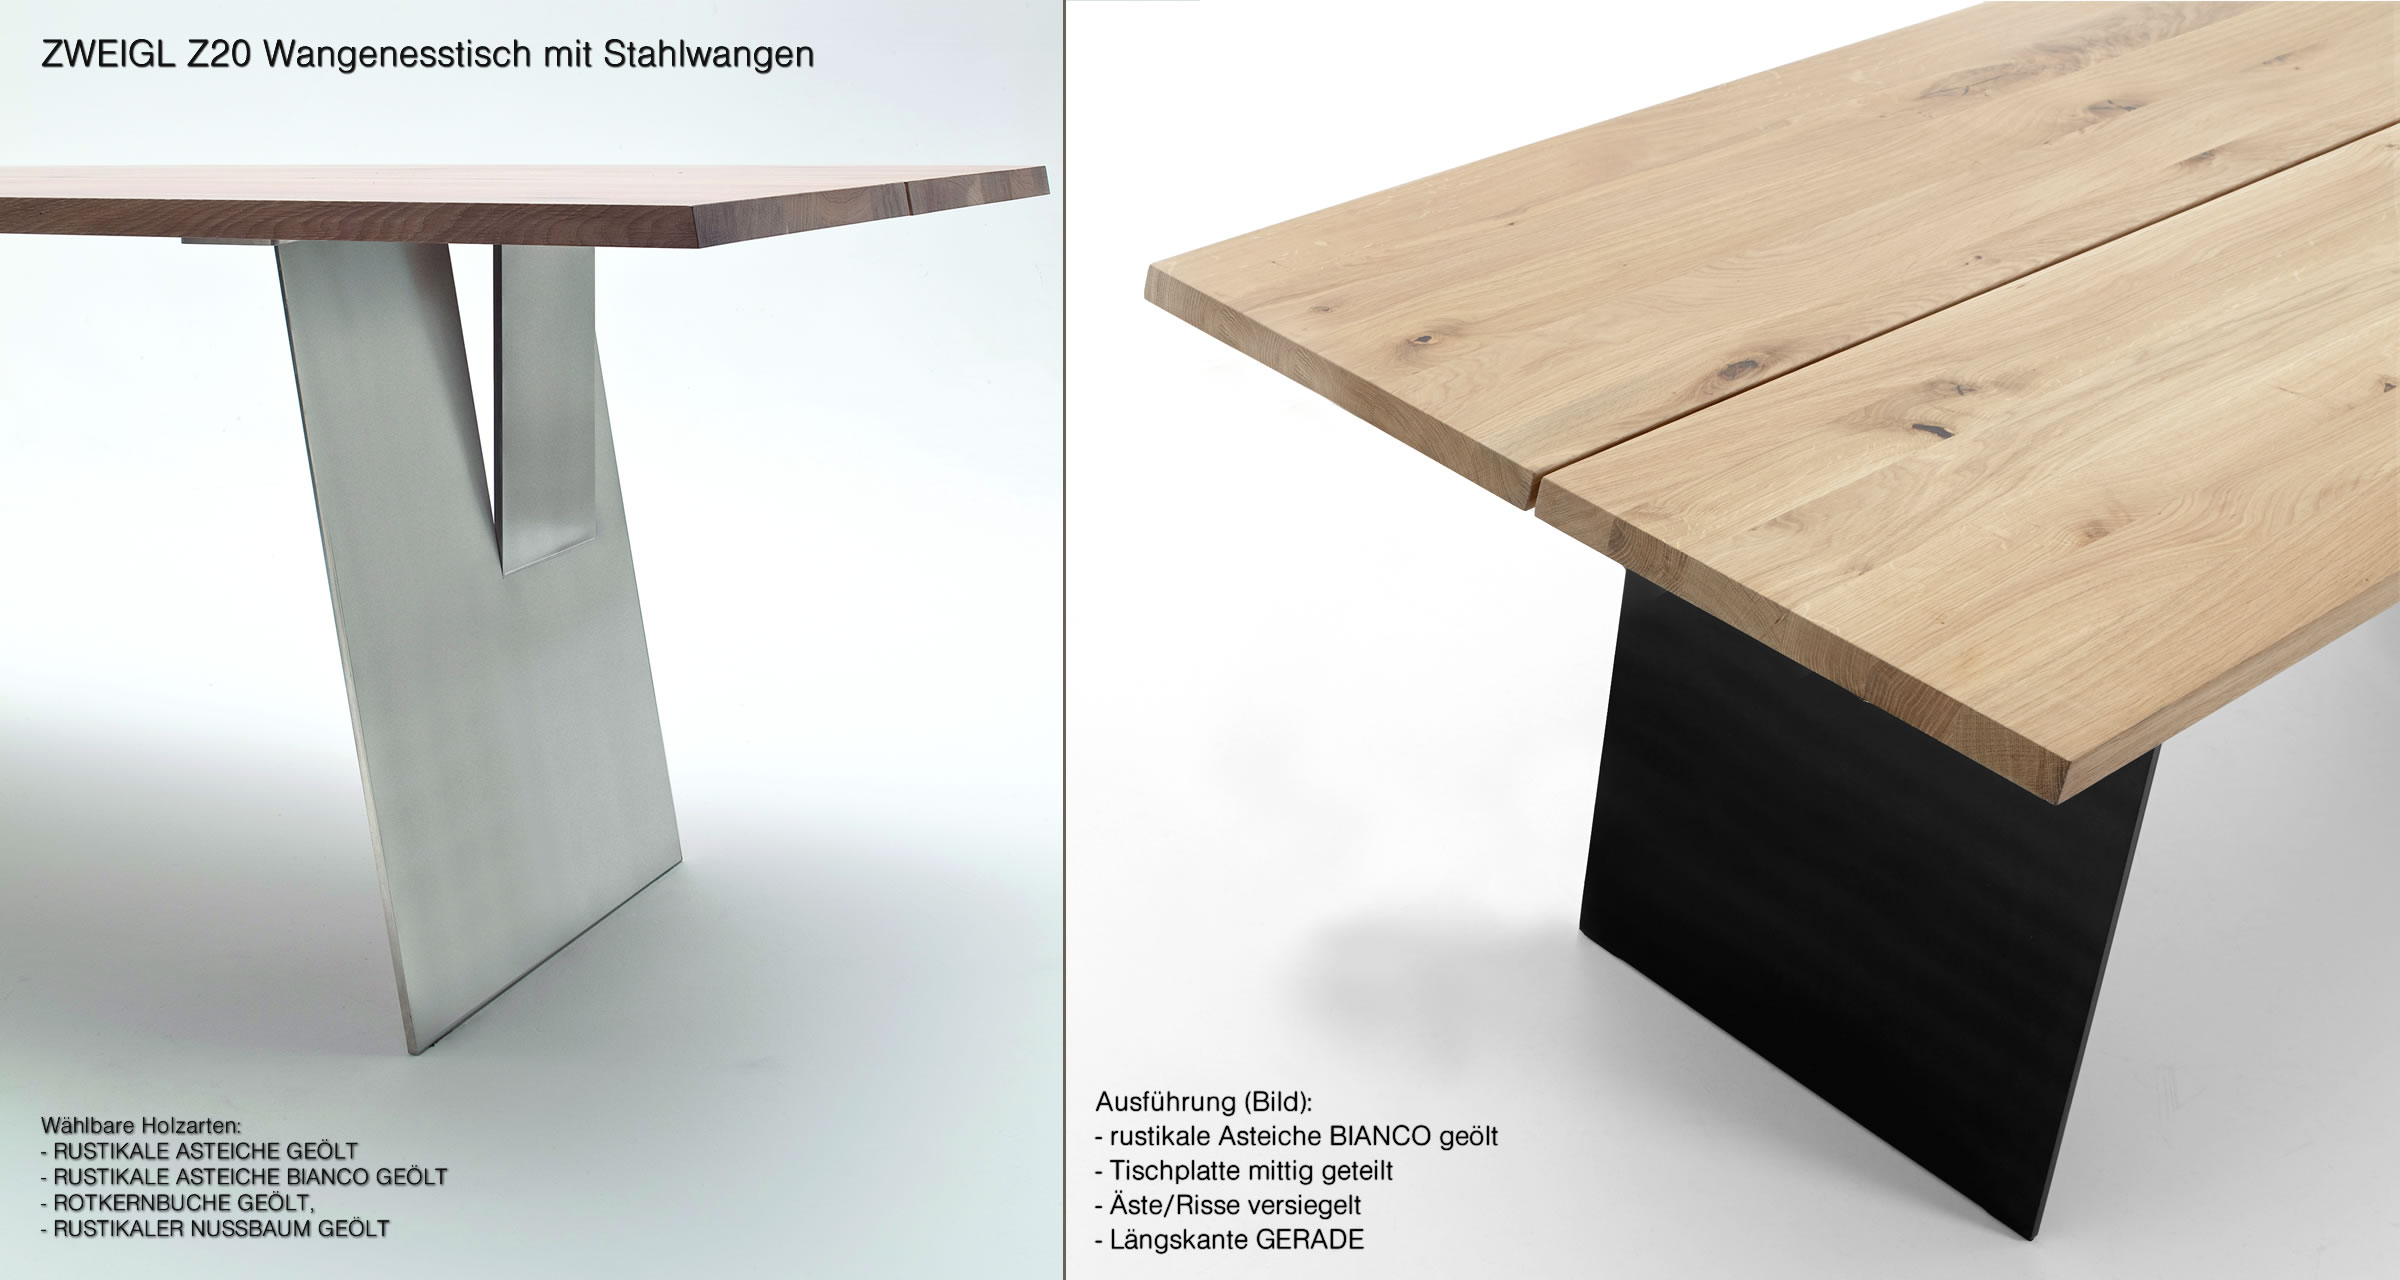 ZWEIGL Z20 Massivholz-Tisch Möbel Massivholz nachhaltigem in rustikaler mit Asteiche. Wimmer Stahlwangen aus Massivholz aus - von NIEHOFF | bei